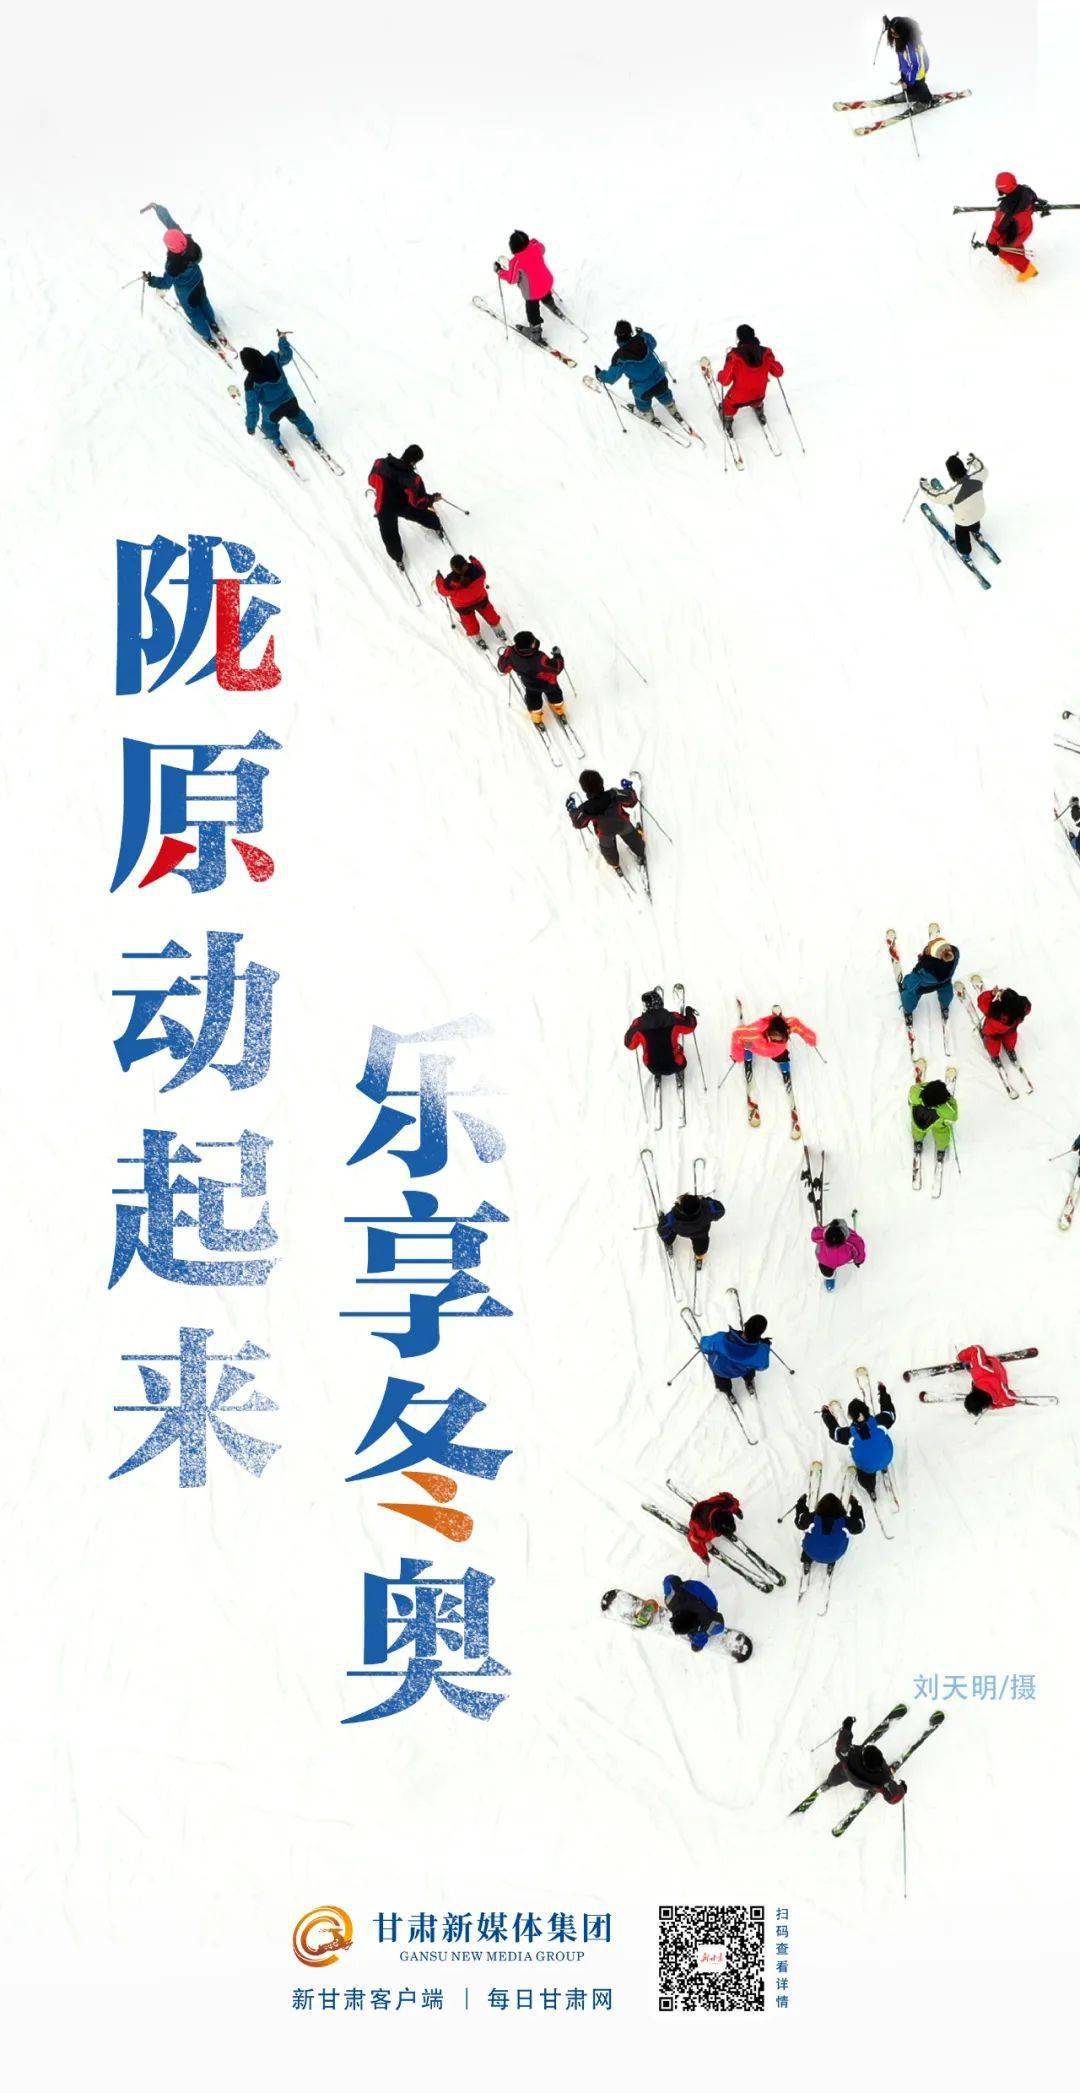 兴隆山滑雪场客服图片